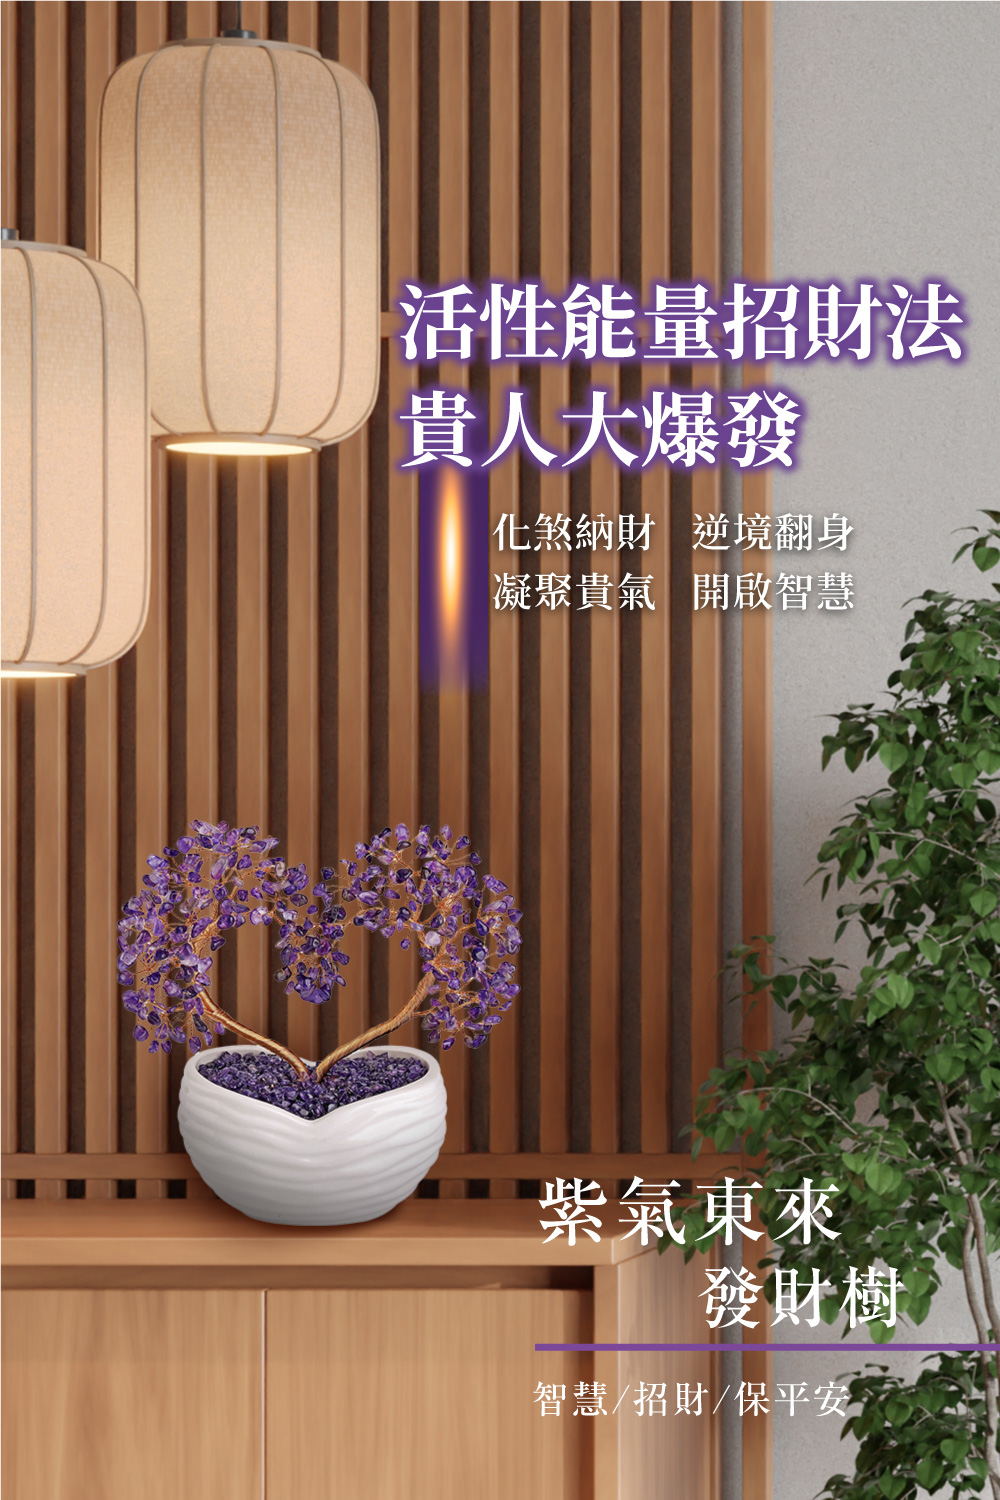 開運NOW-紫氣東來發財樹 產品說明